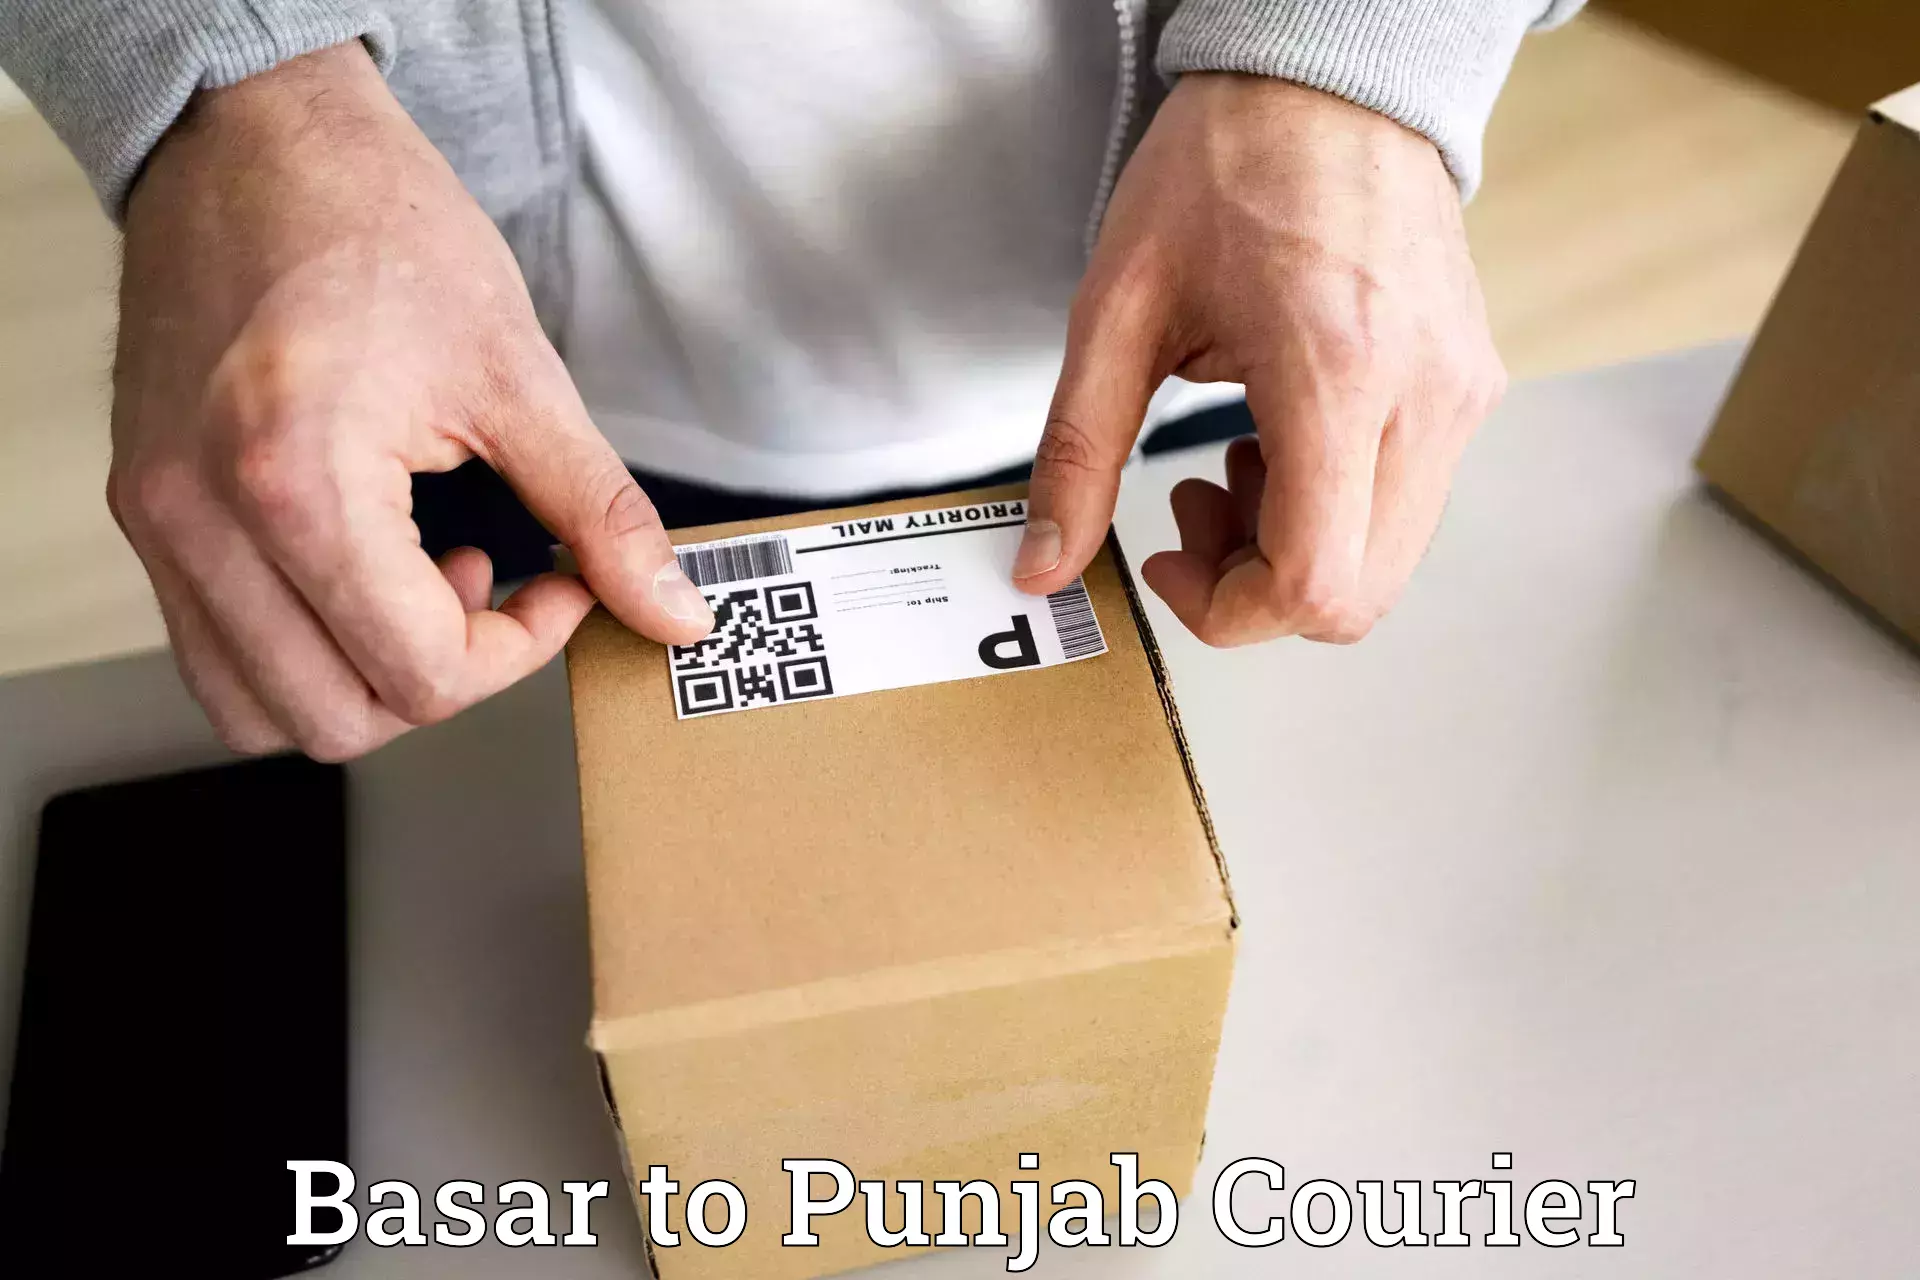 Budget-friendly shipping Basar to Begowal